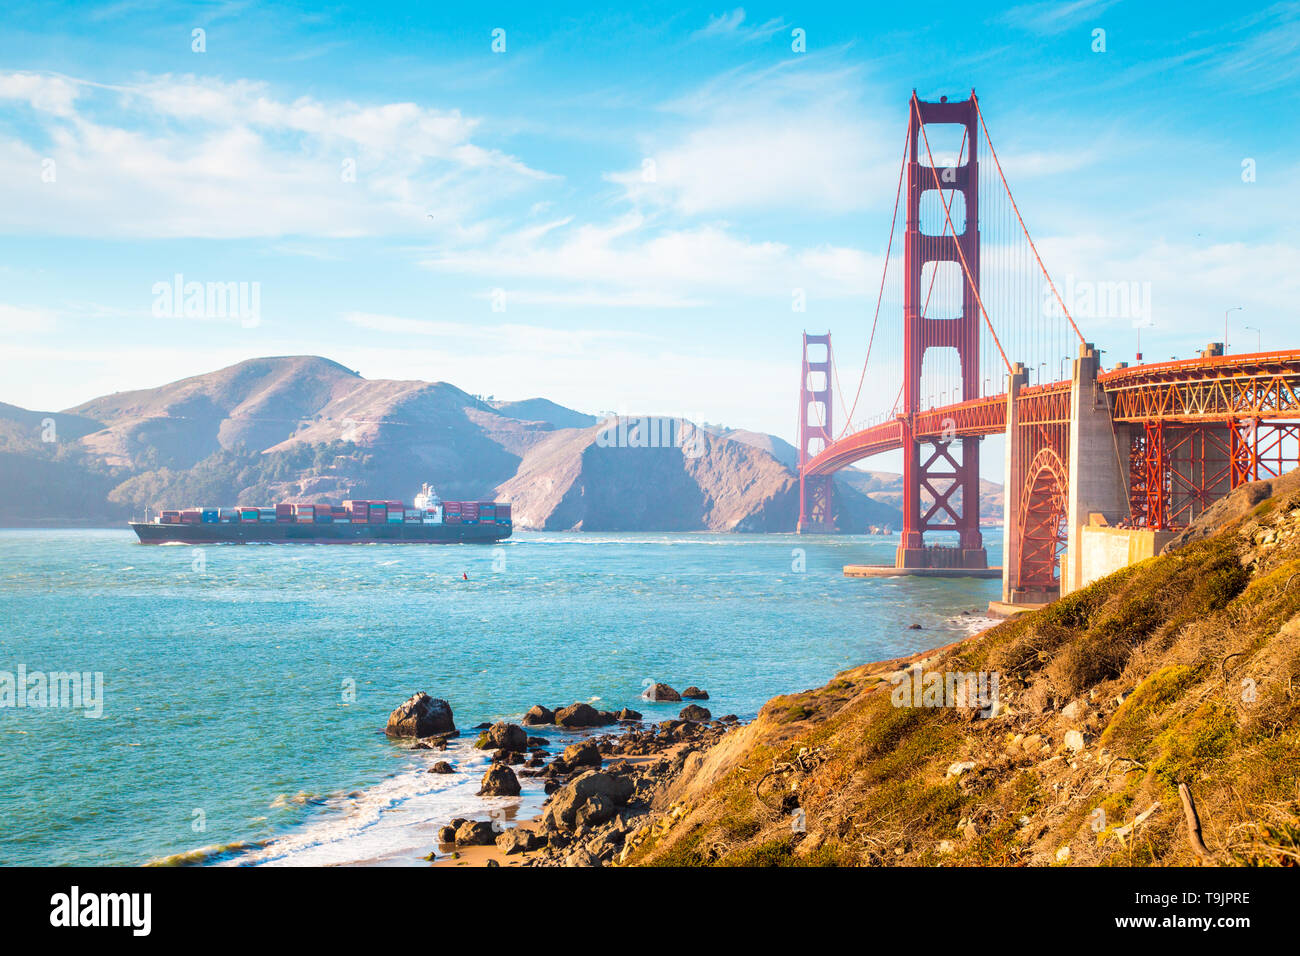 Klassische Ansicht der berühmten Golden Gate Bridge mit frachtschiff an einem sonnigen Tag mit blauen Himmel und Wolken im Sommer, San Francisco, Kalifornien, USA Stockfoto